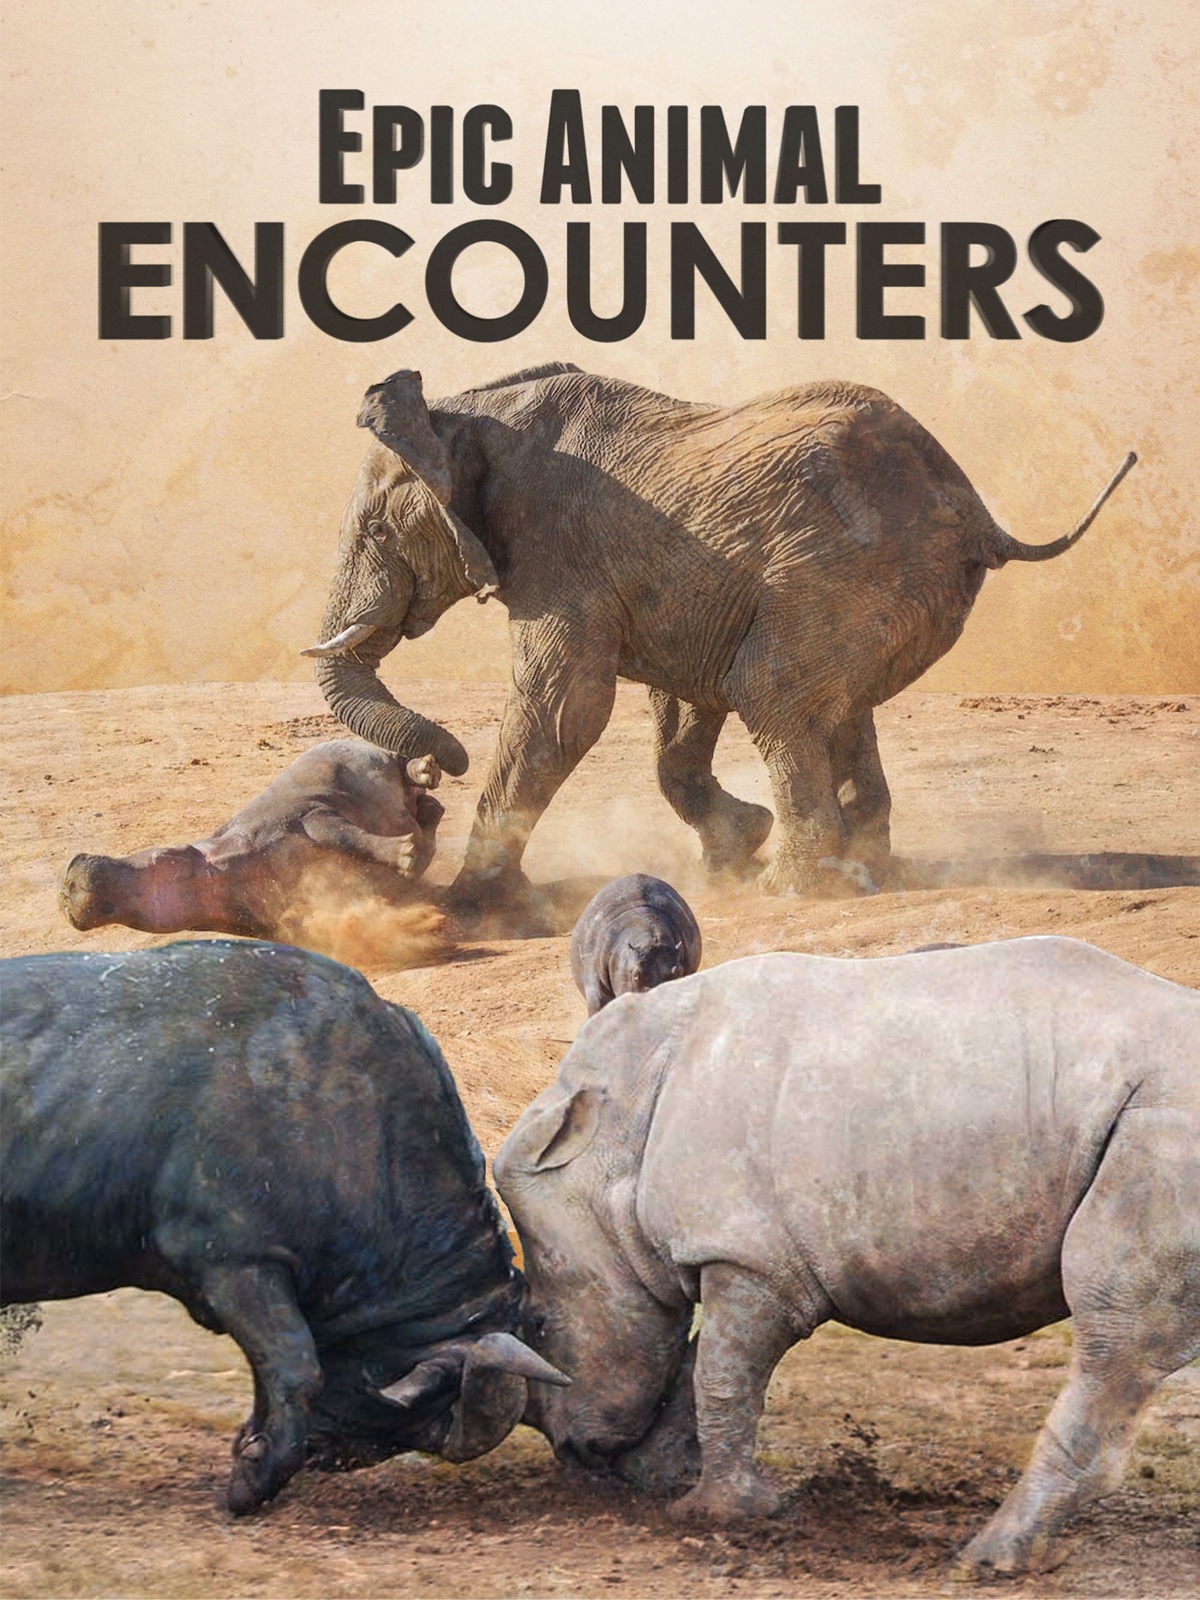 Caratula de Epic Animal Encounters (Animales: encuentros épicos) 